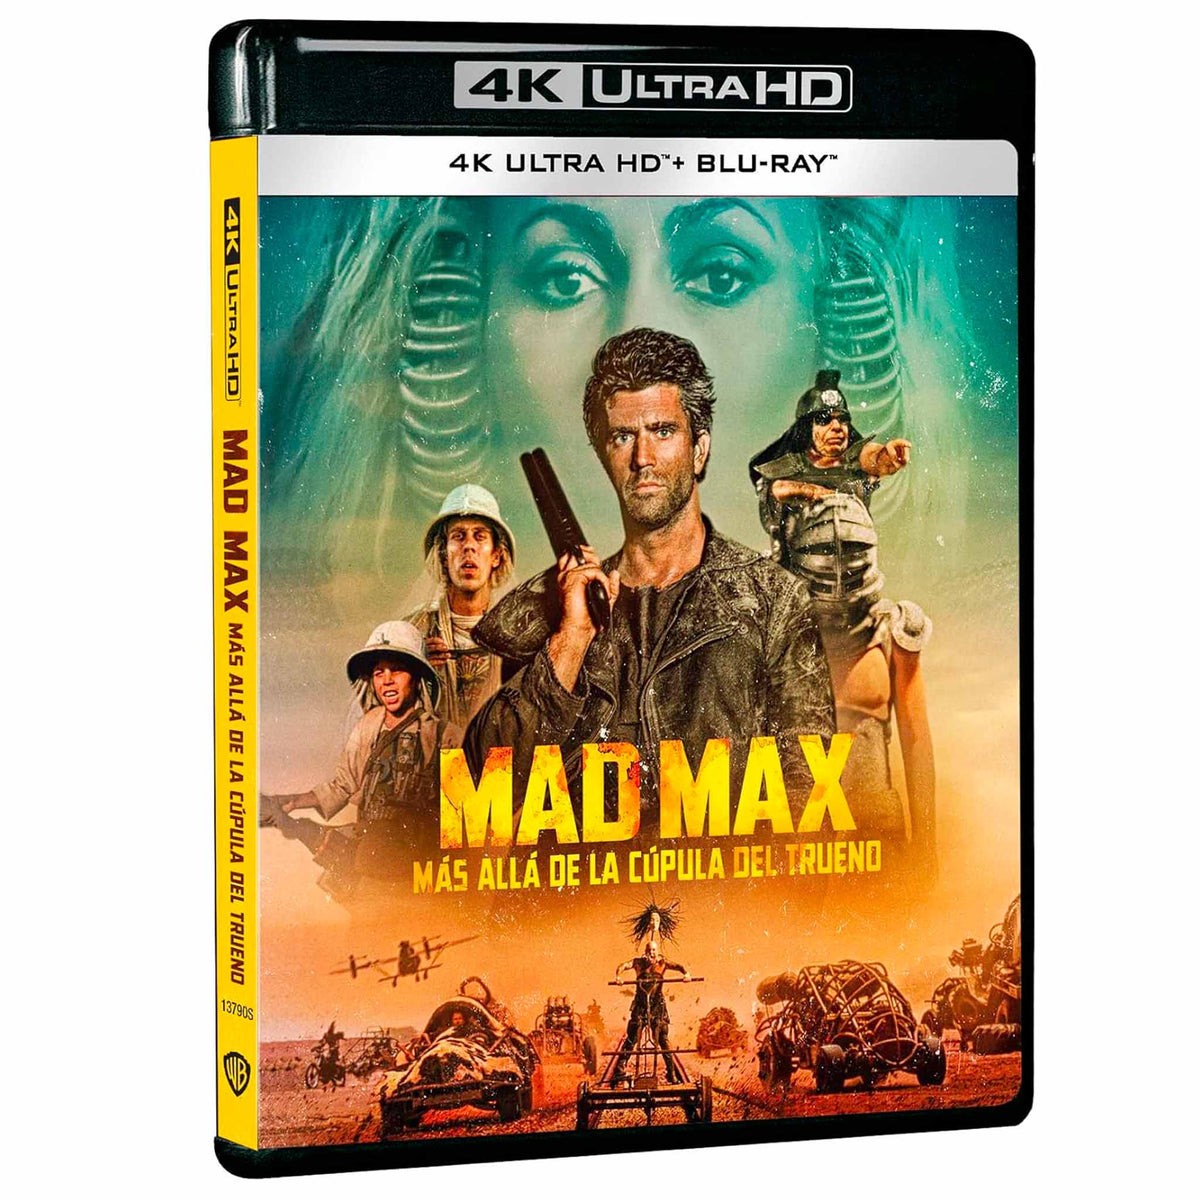 
  
  Mad Max 3: Más allá de la Cúpula del Trueno 4K UHD + Blu-Ray
  
